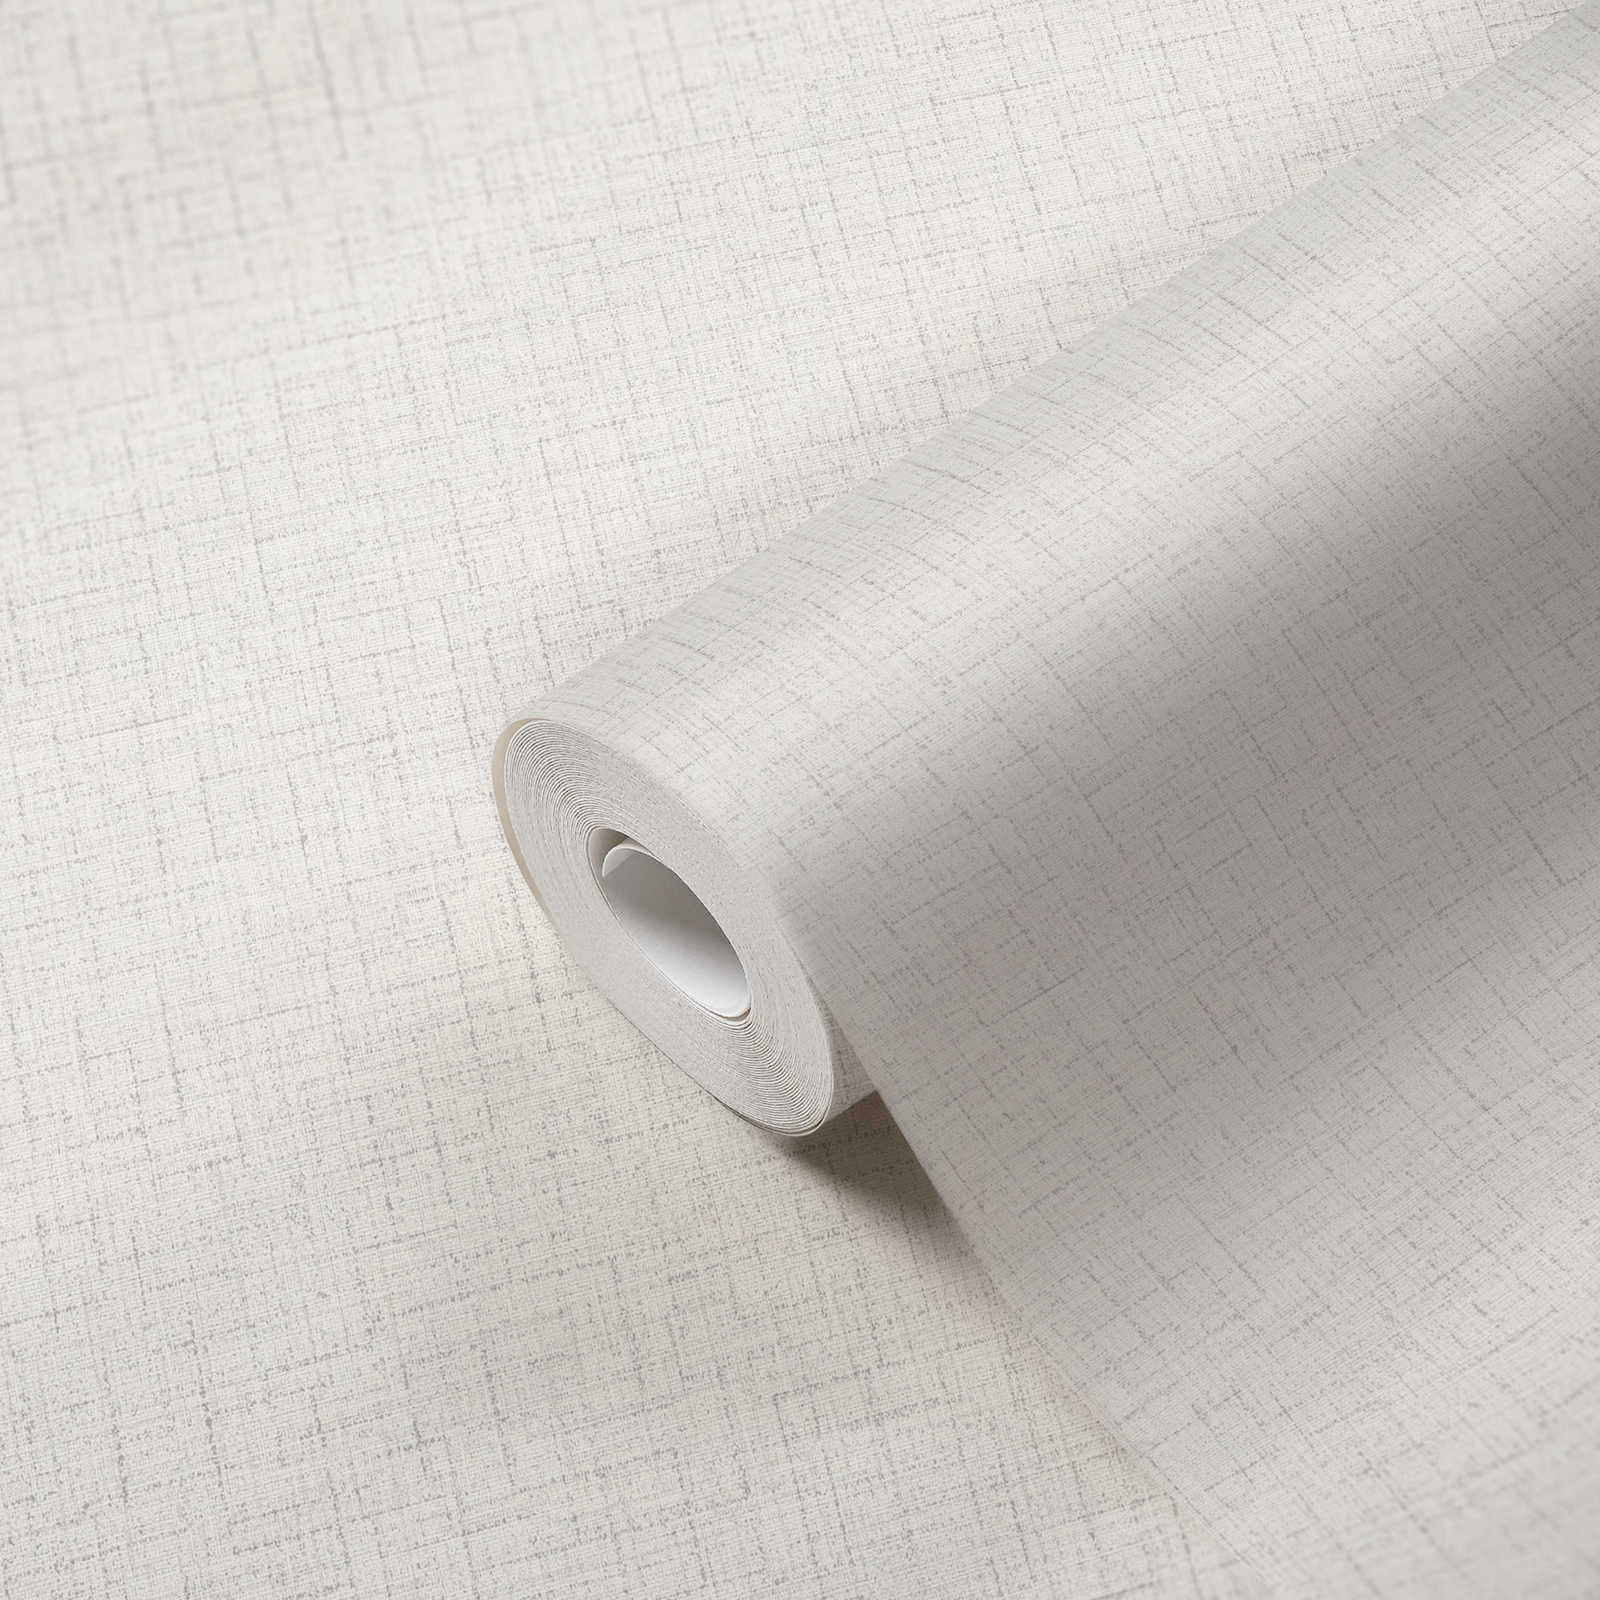             Neutraal eenheidsbehang met linnenlook - grijs, wit
        